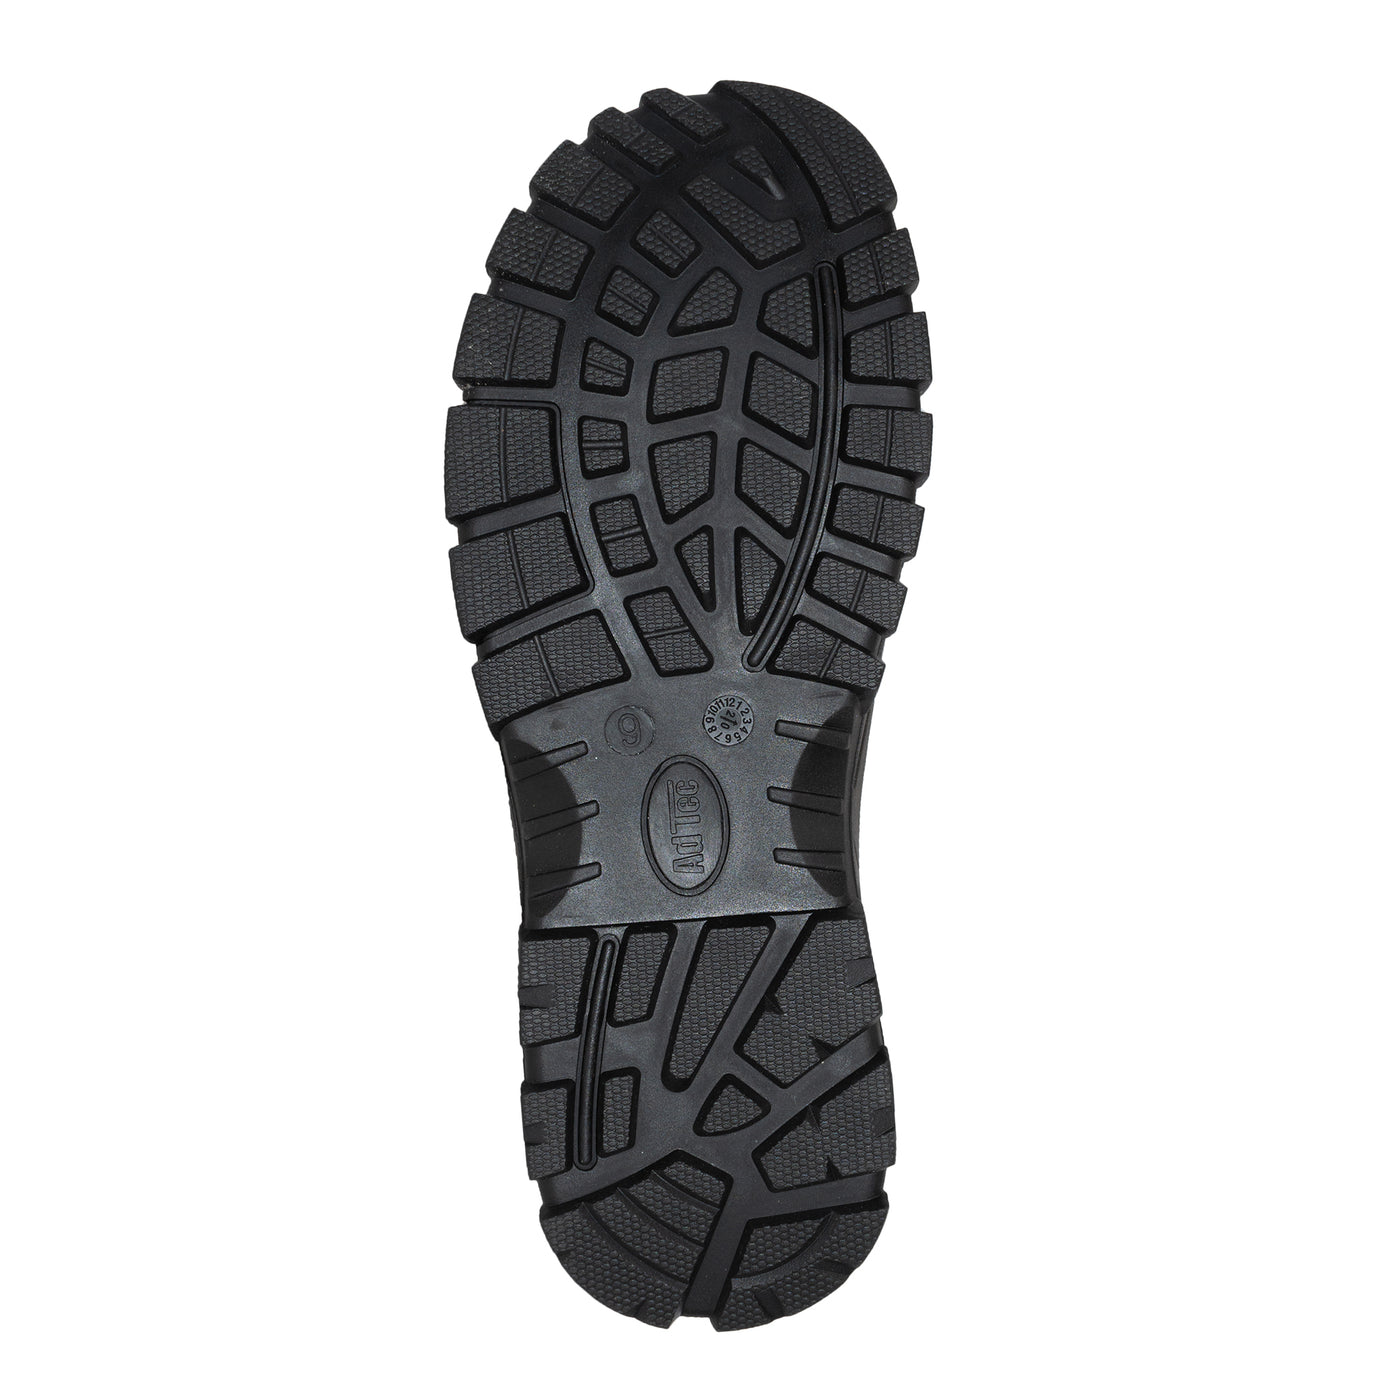 Men 6" Brown Waterproof Composite Toe Work Boot - 9900-BR - Shop Genuine Leather men & women's boots online | AdTecFootWear